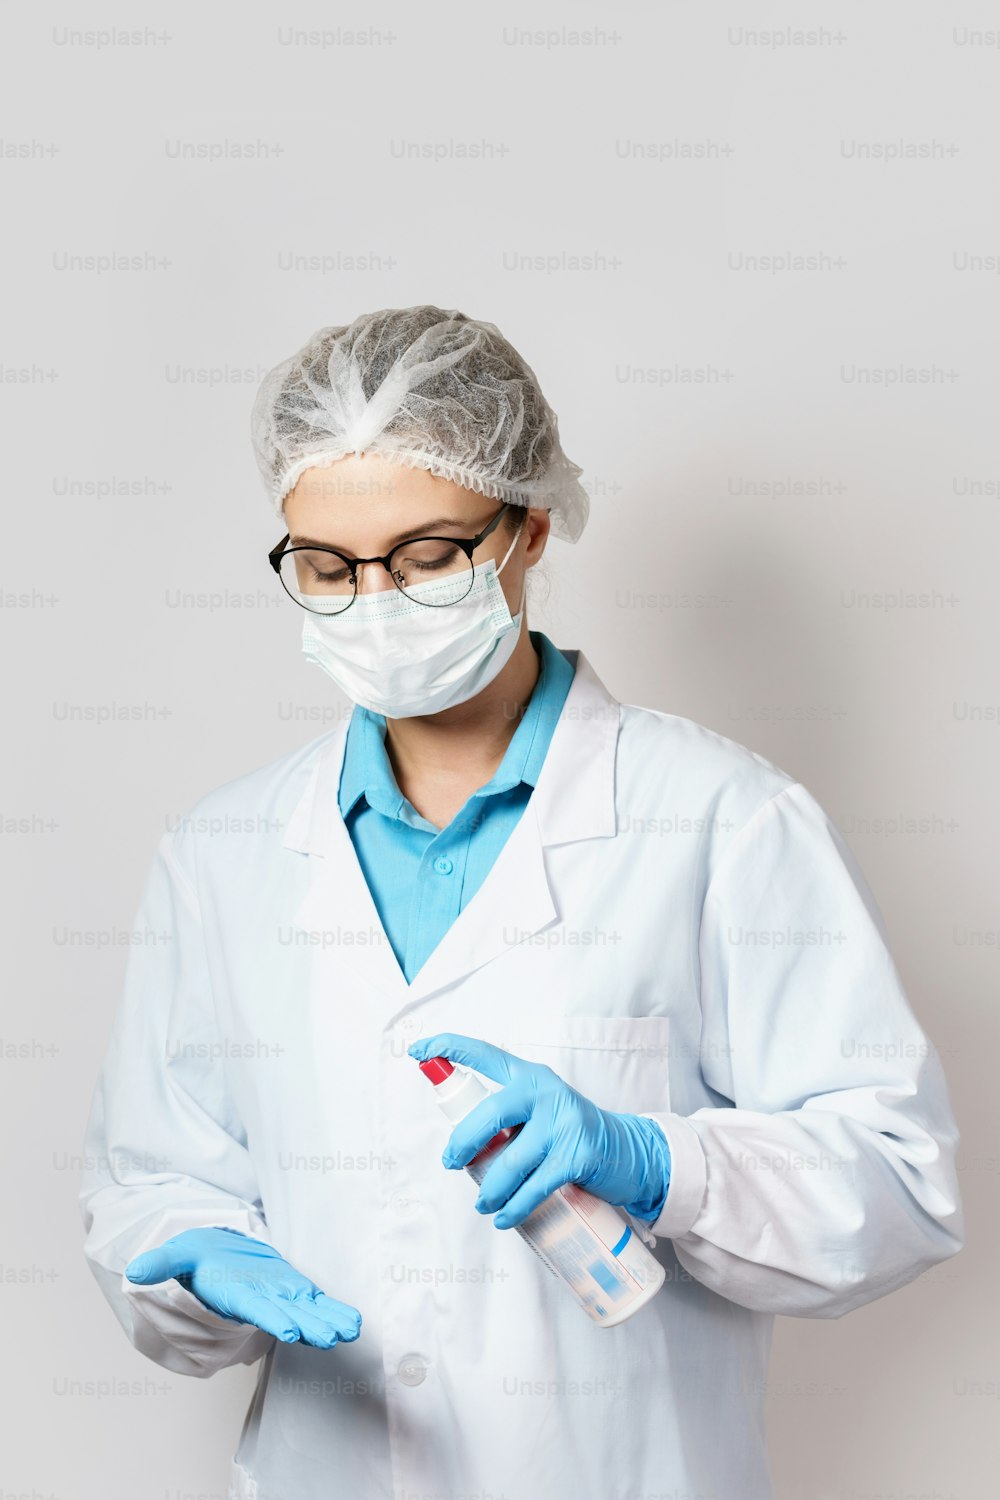 Una joven doctora hace una desinfección adicional de los guantes con un spray de alcohol